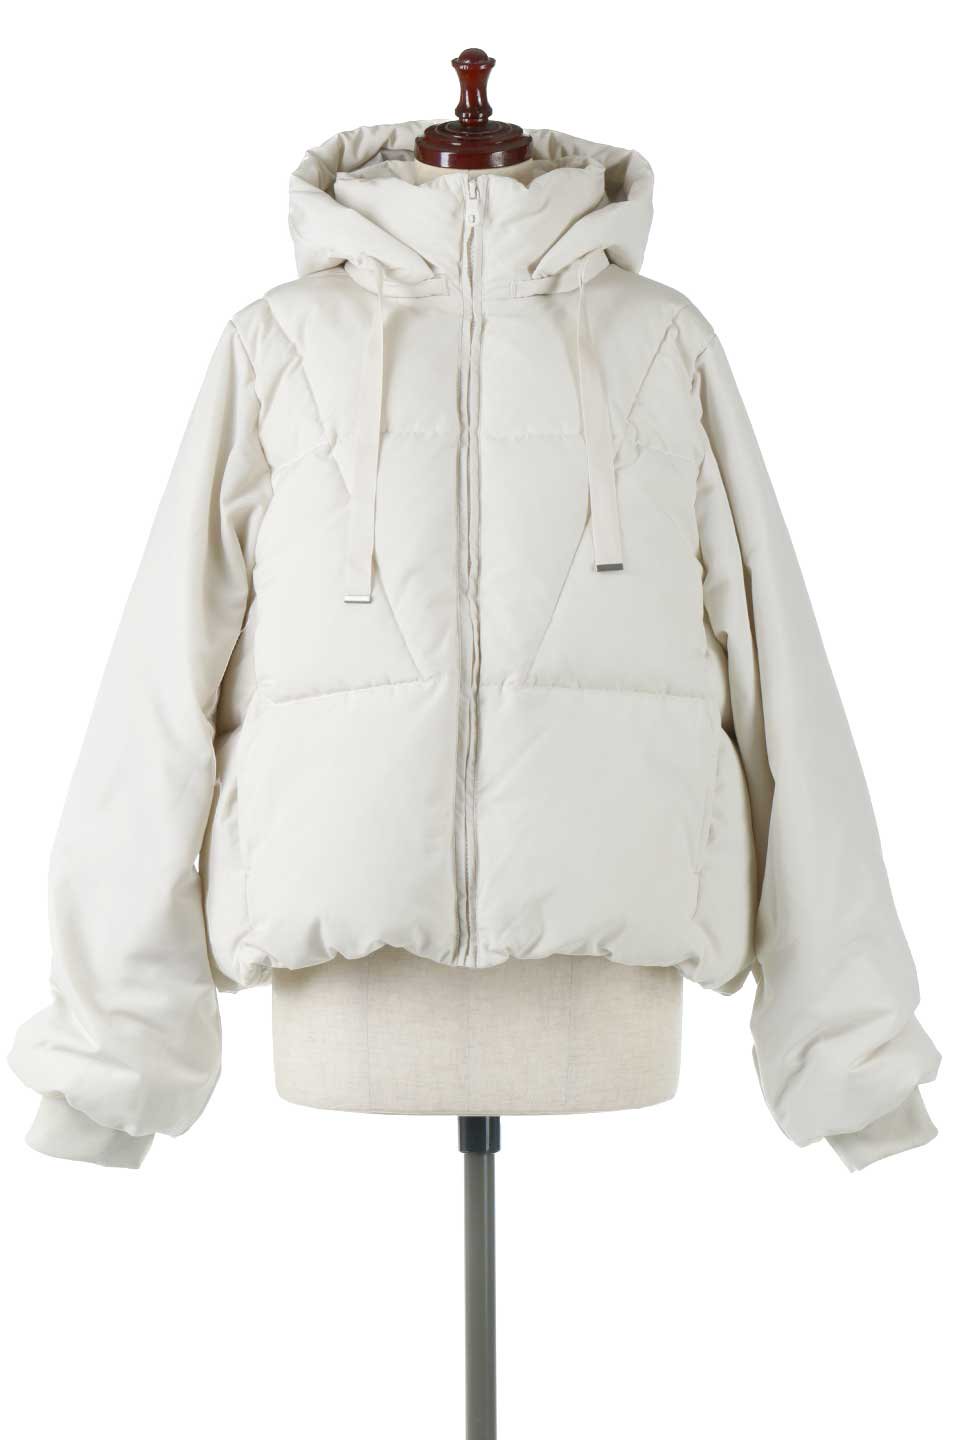 SORONAShortPufferJacketソロナ中綿・ショートジャケット大人カジュアルに最適な海外ファッションのothers（その他インポートアイテム）のアウターやジャケット。ボリューミーだけど着ぶくれしない。デュポン社の新素材を使用した中綿ジャケット。